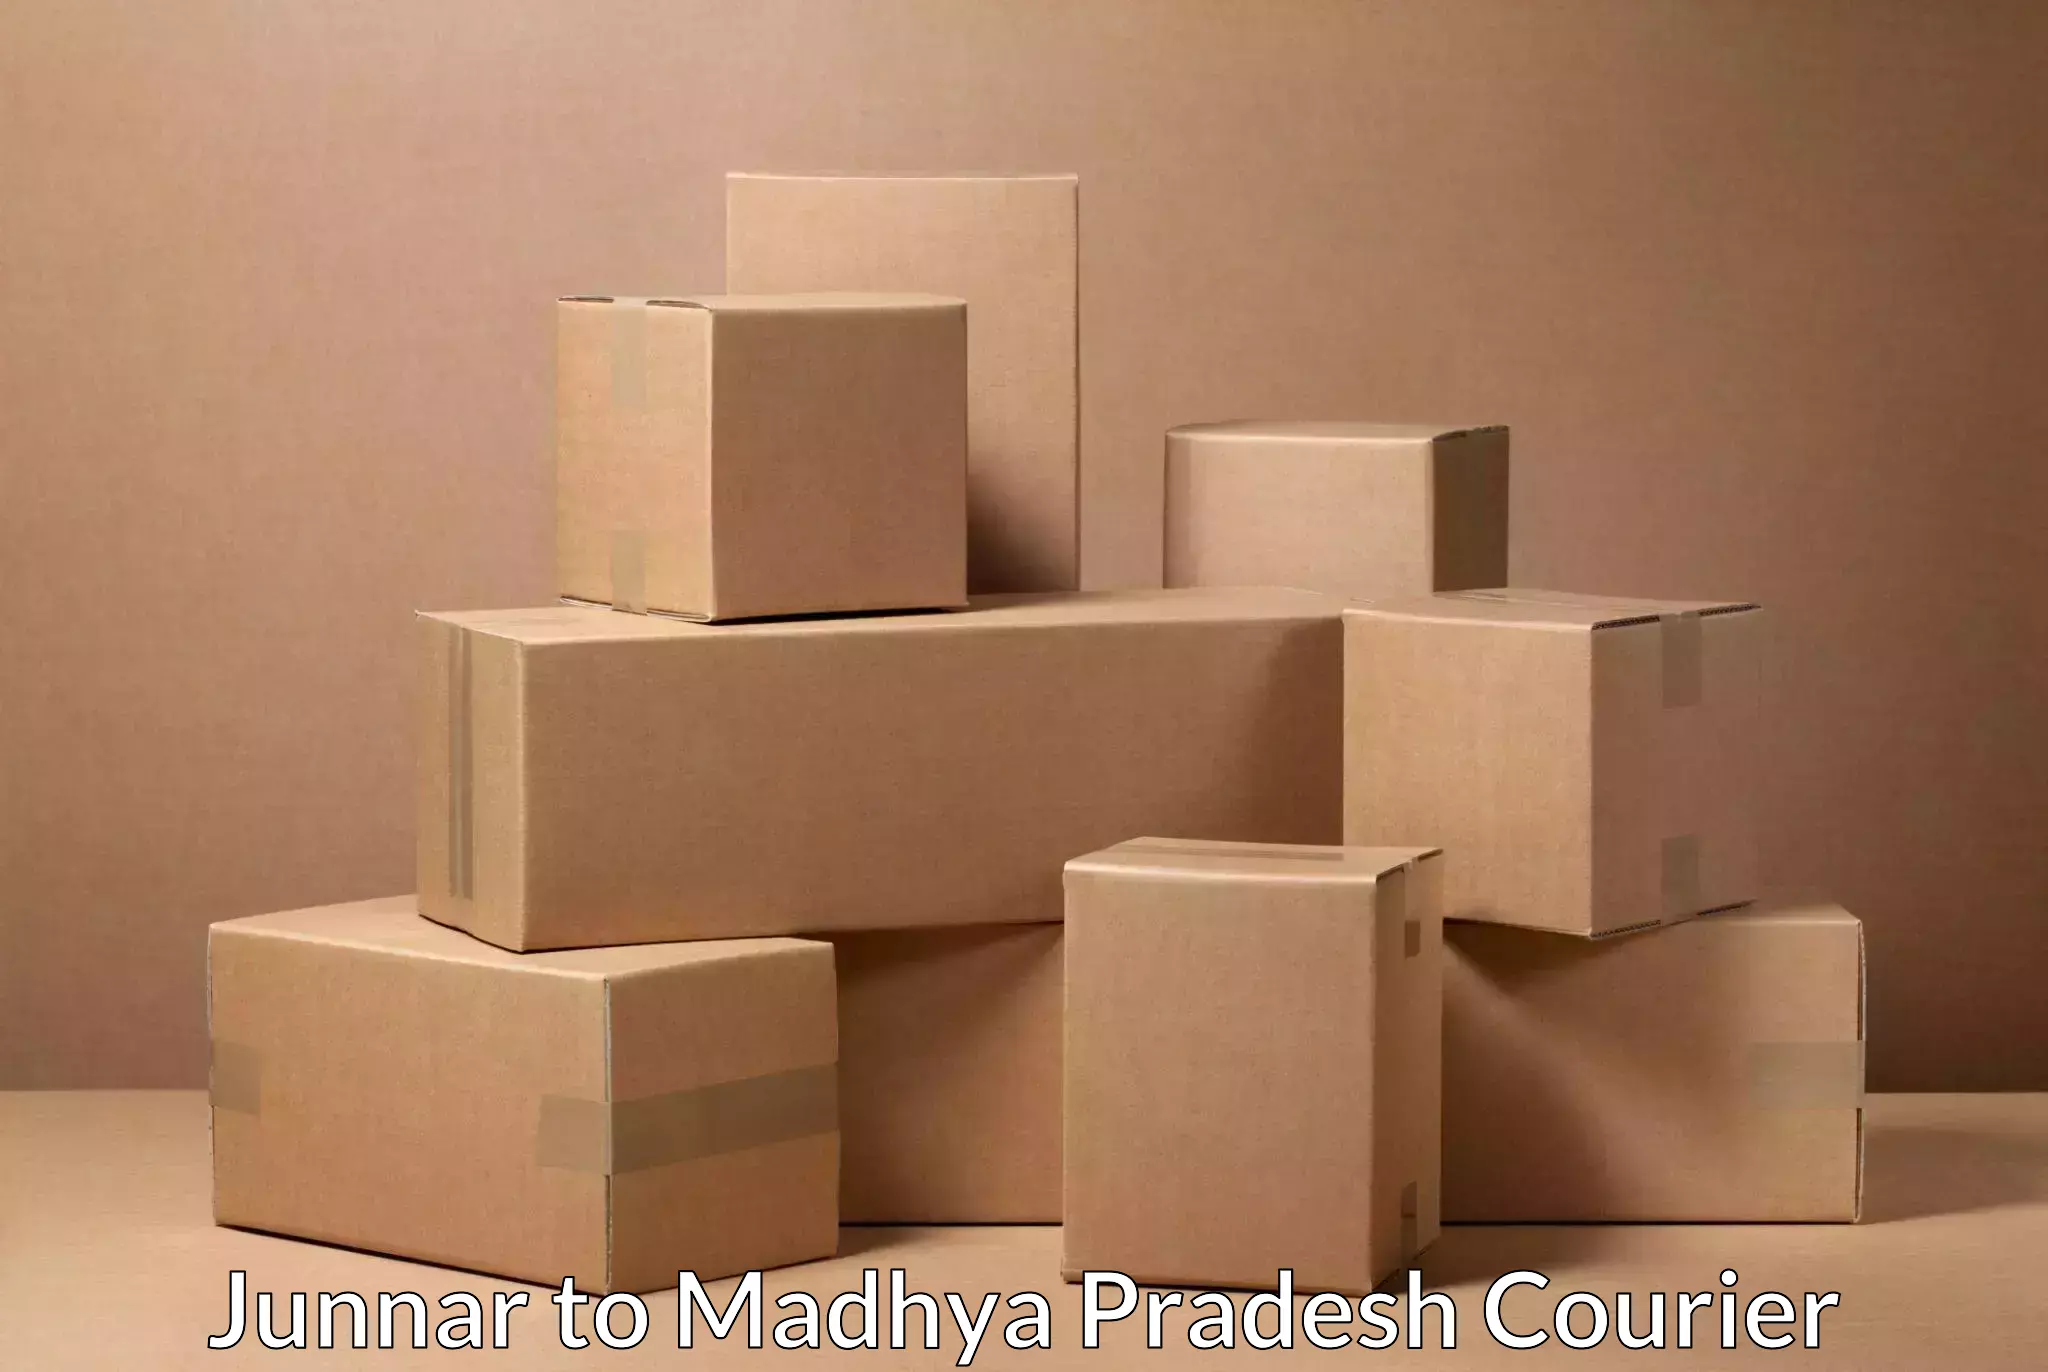 Efficient parcel delivery Junnar to Amarwara